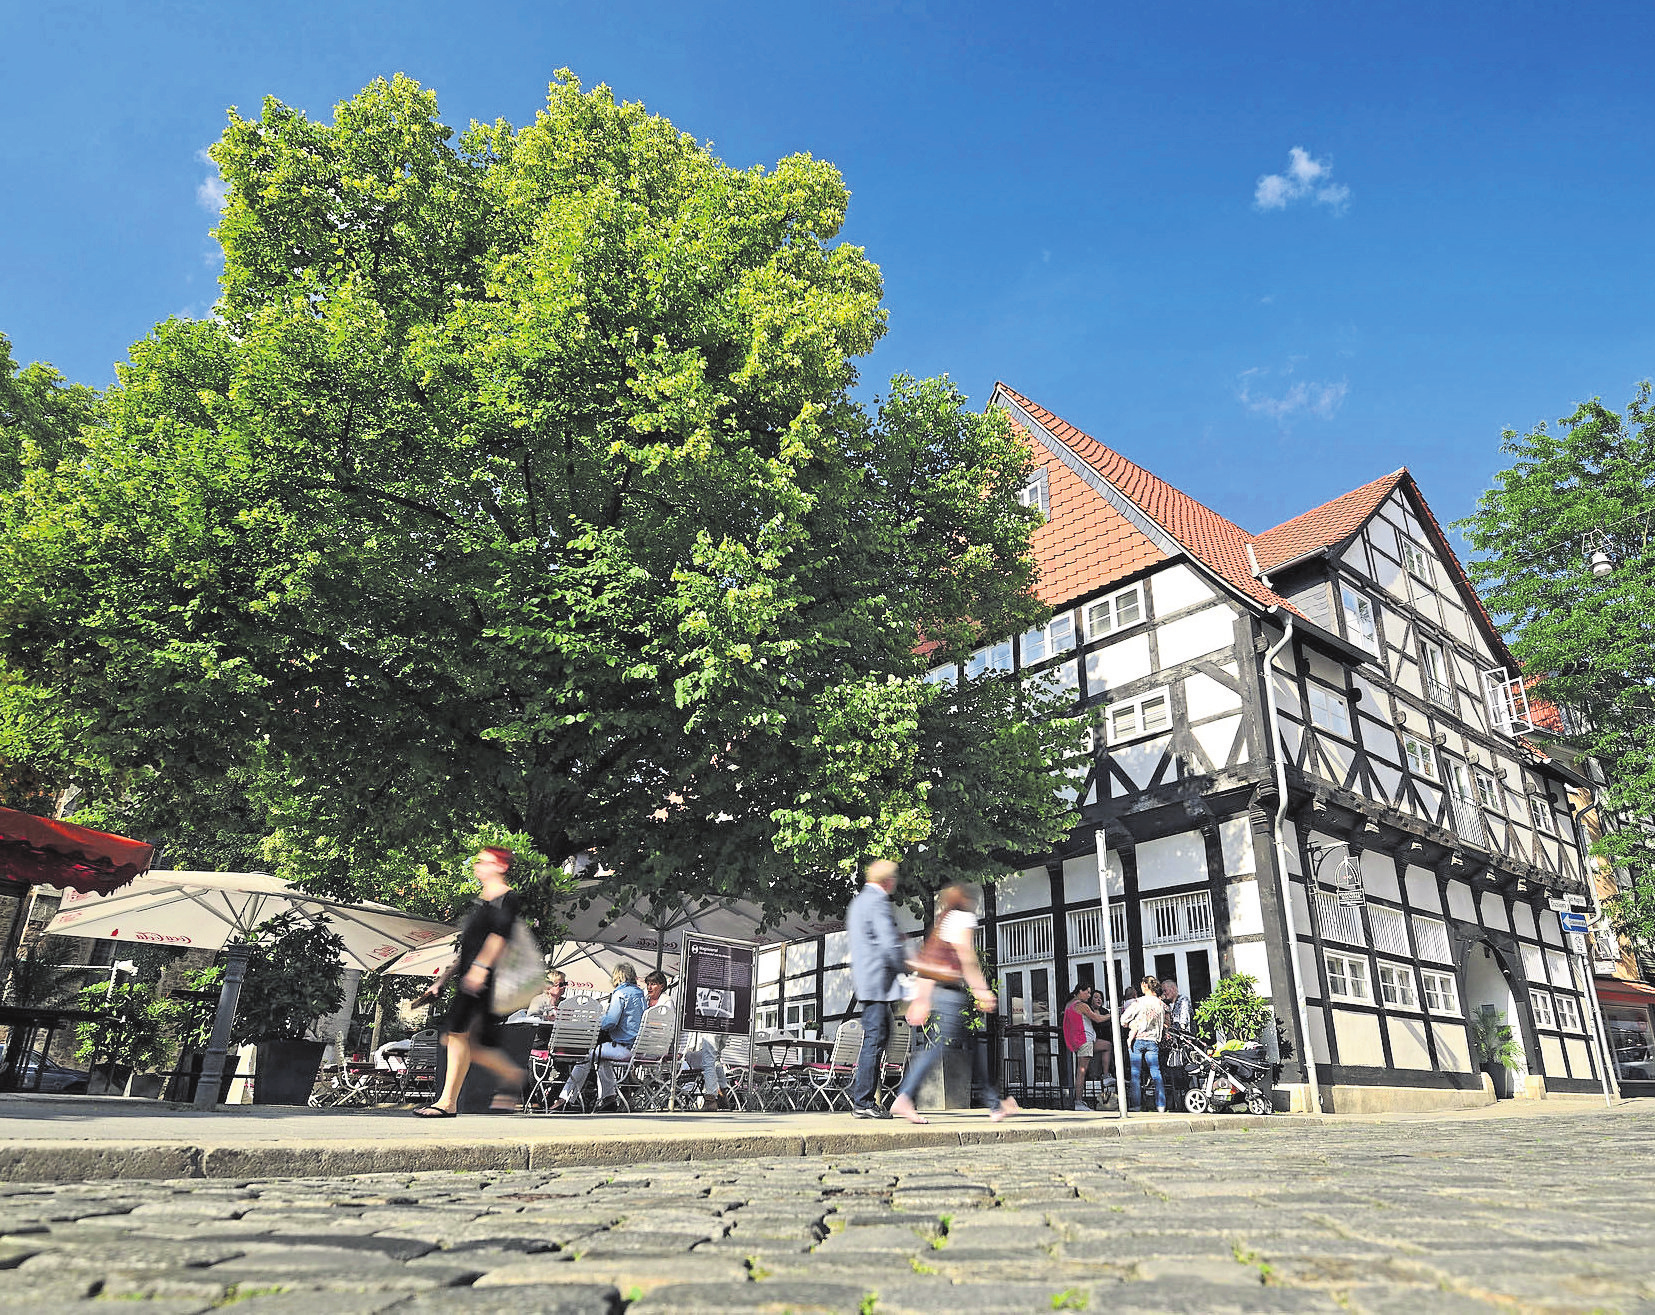 Im Magniviertel lehnen sich historische Fachwerkhäuser aneinander, in denen viele kleine Geschäfte und Cafés zum Bummeln einladen.